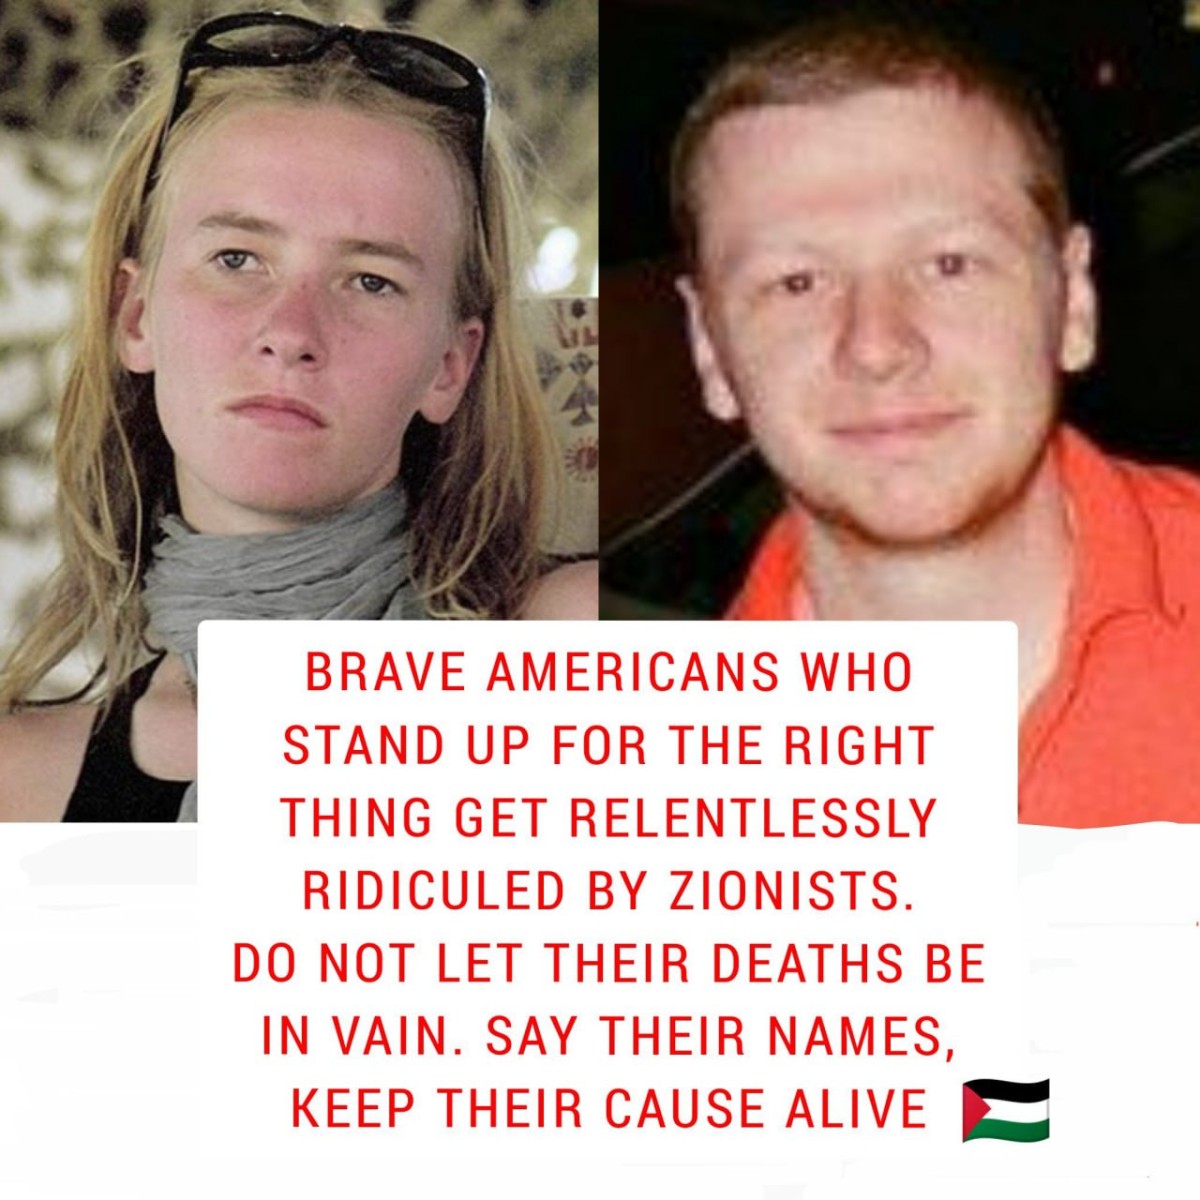 Aaron Bushnell’s final words were:   “Free Palestine